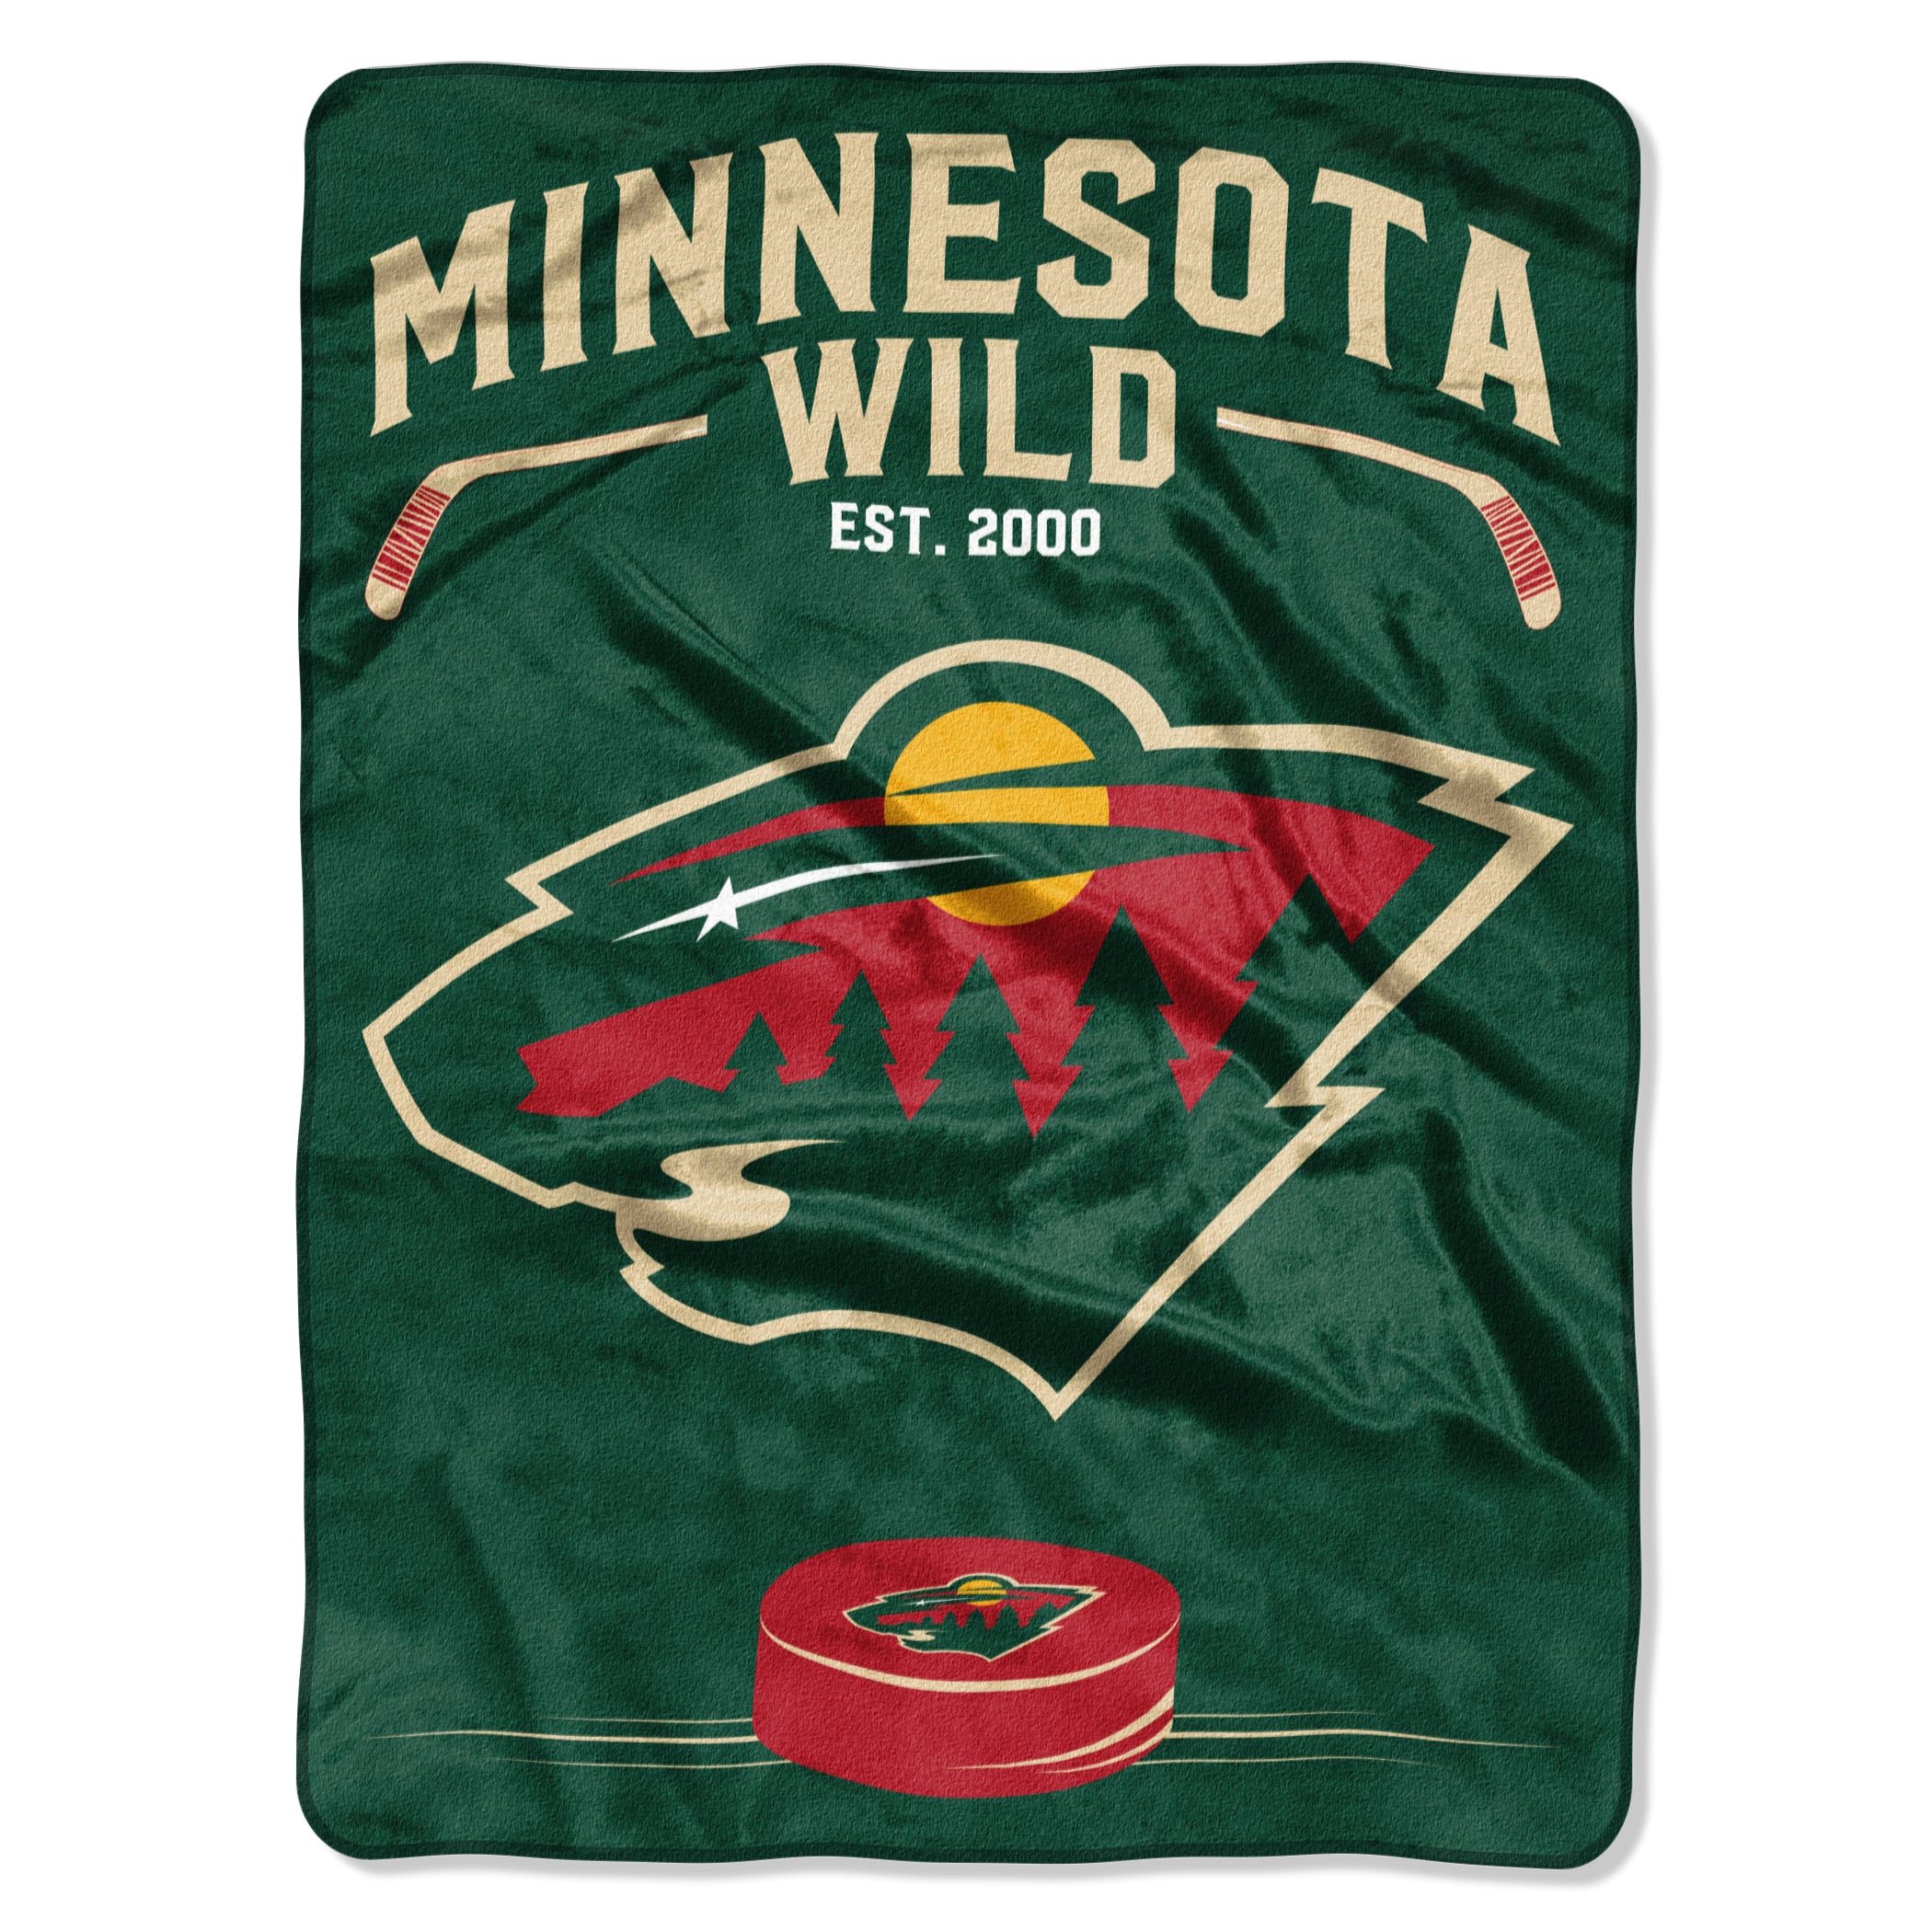 Minnesota Wild Blanket 60x80 Raschel Inspired Design